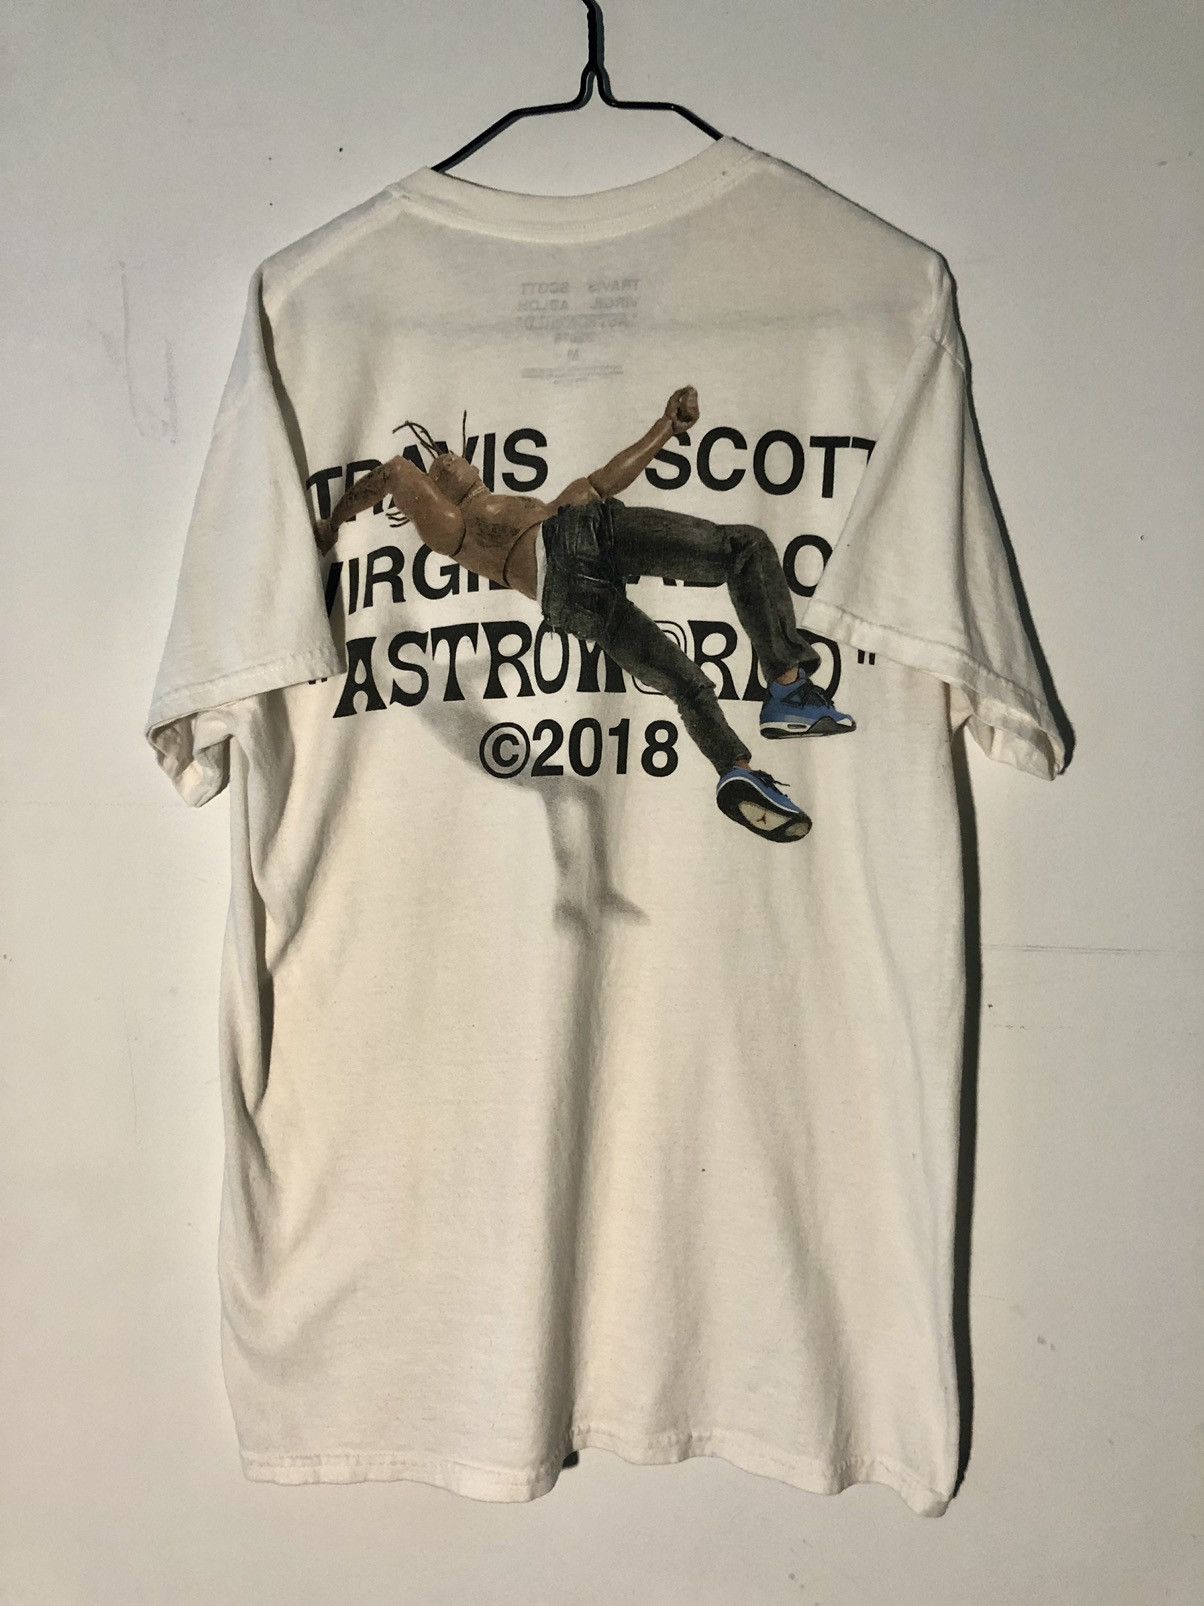 Travis Scott Off-White Travis Scott 2018 Shirt | Grailed